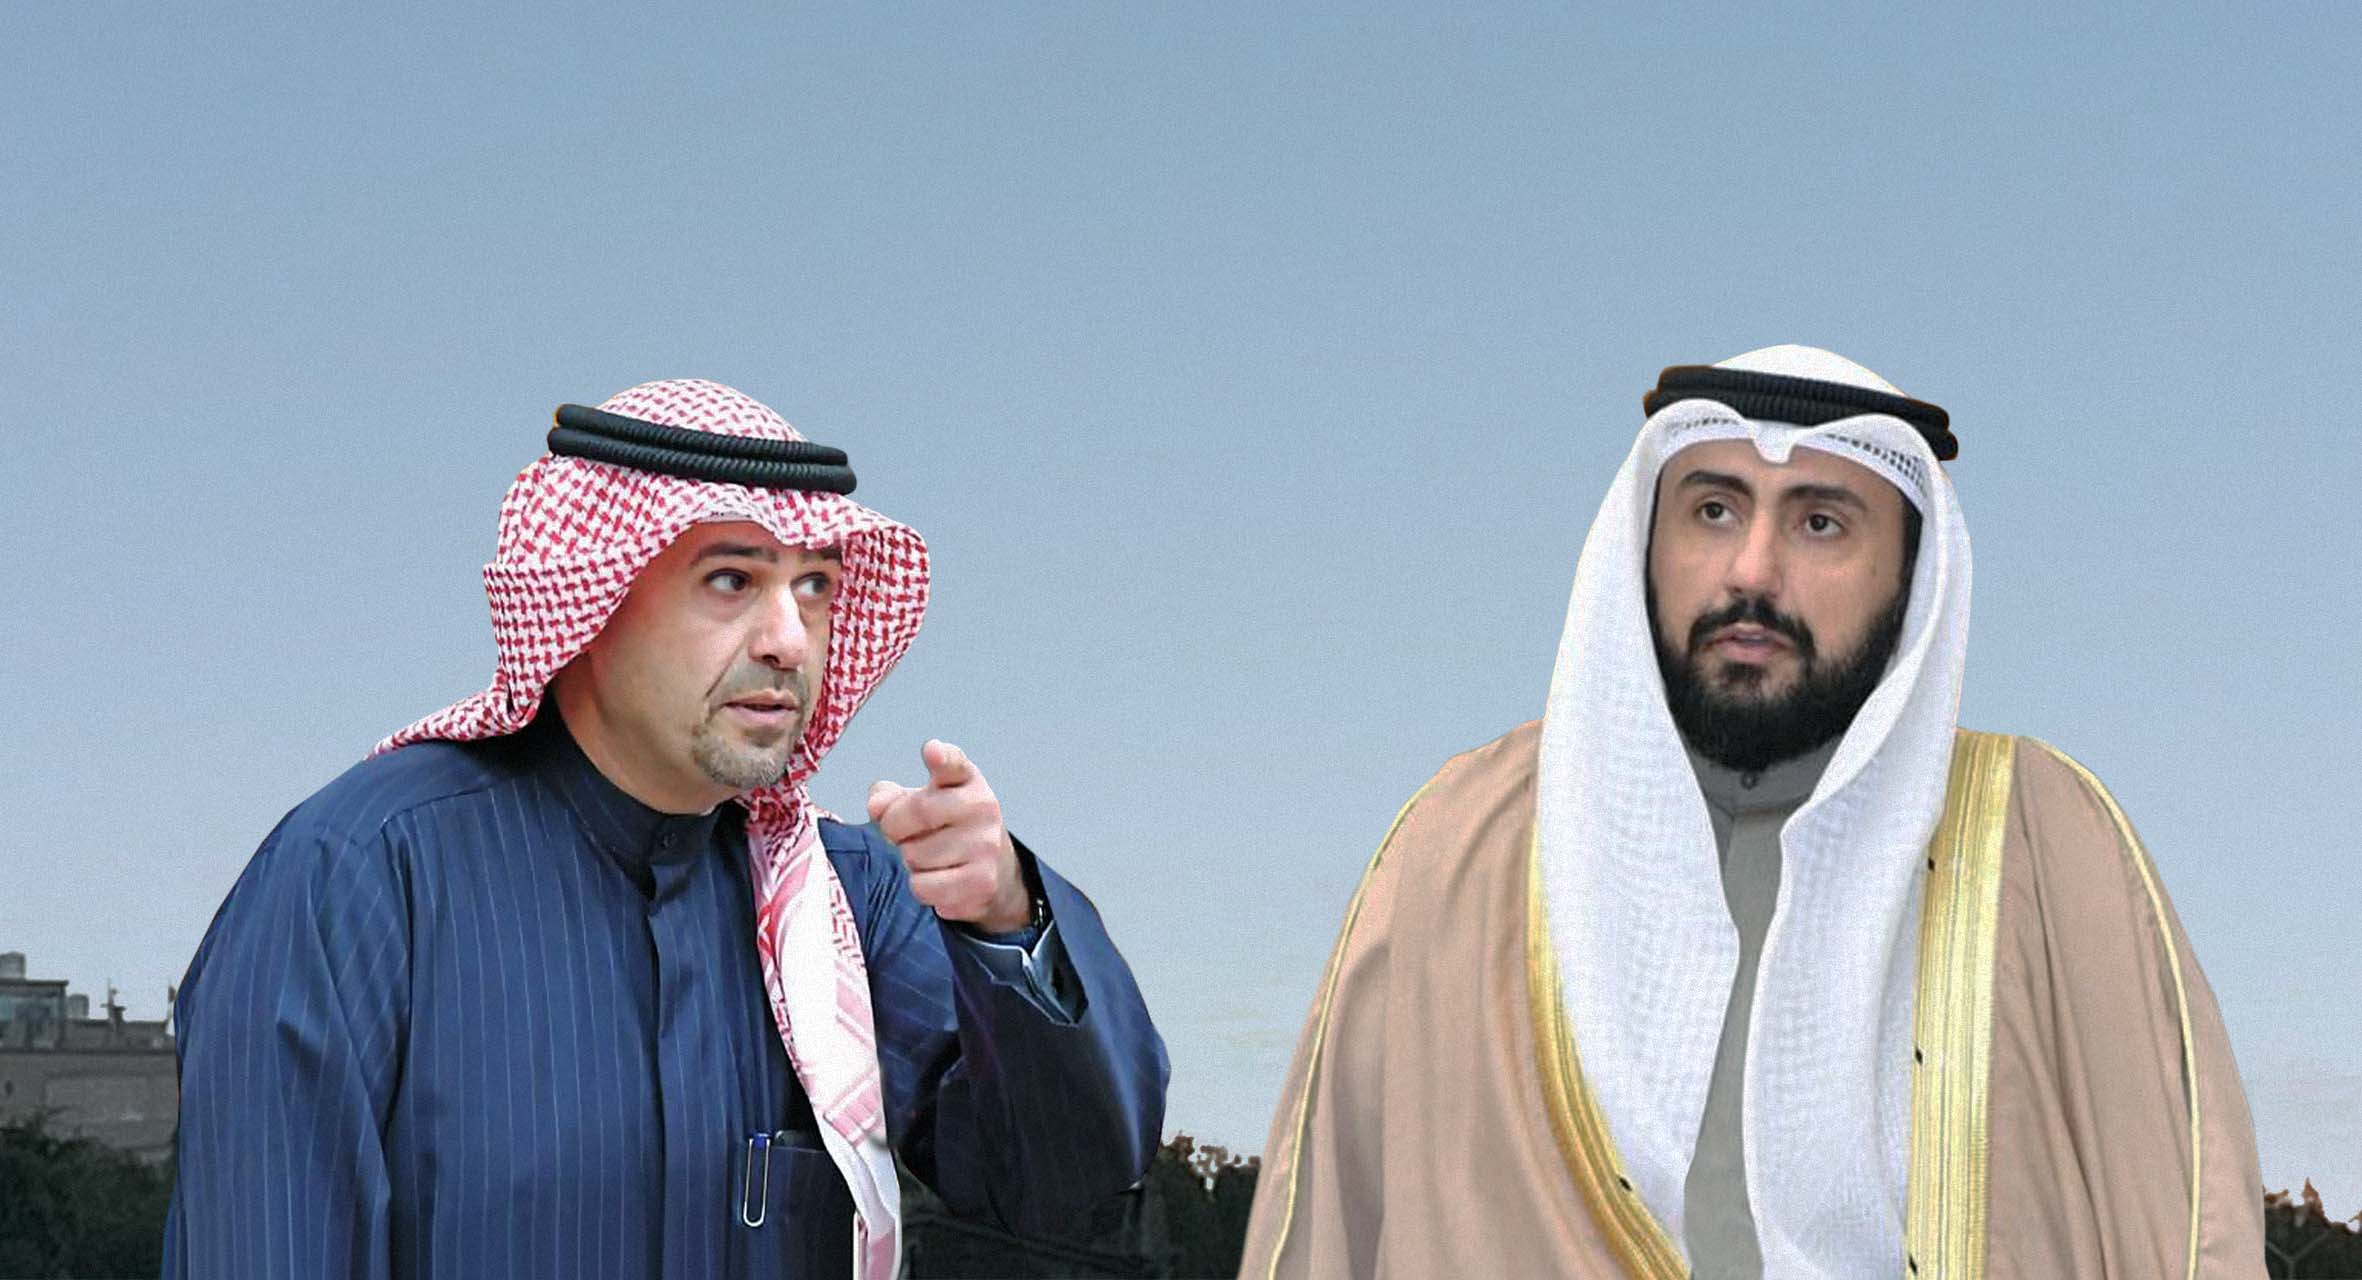 صورة الكويت تطالب بإعادة روح "بدون" صعدت إلى السماء من أراضيها دون موافقات رسمية